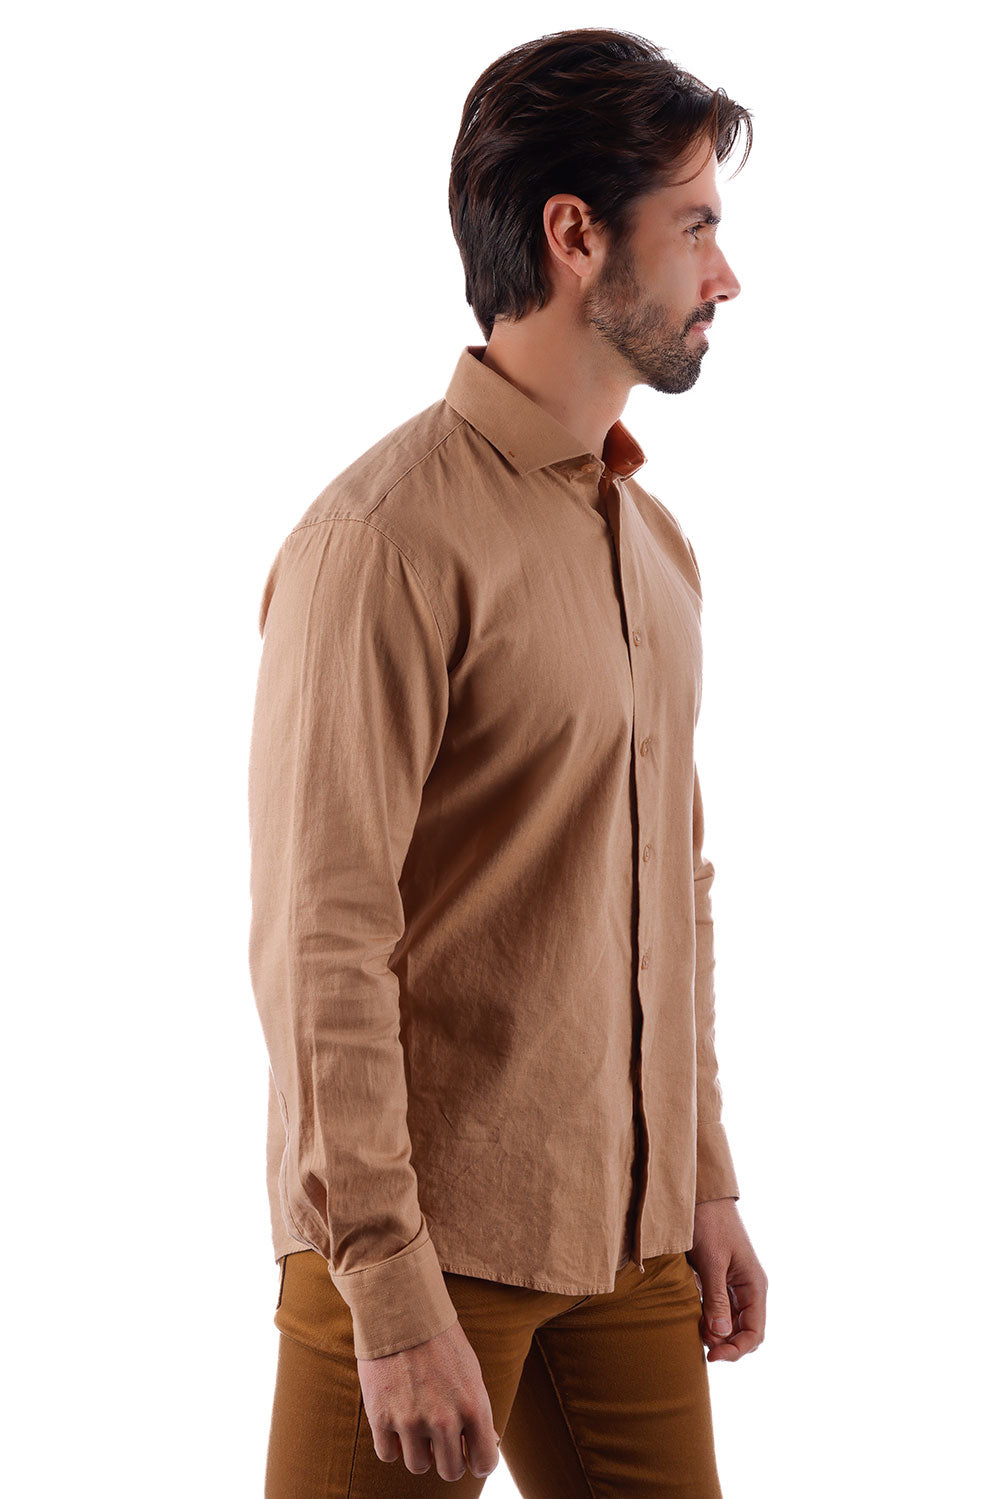 BARABAS Men's Linen Lightweight Button Down Long Sleeve Shirt 4B37 Mocha